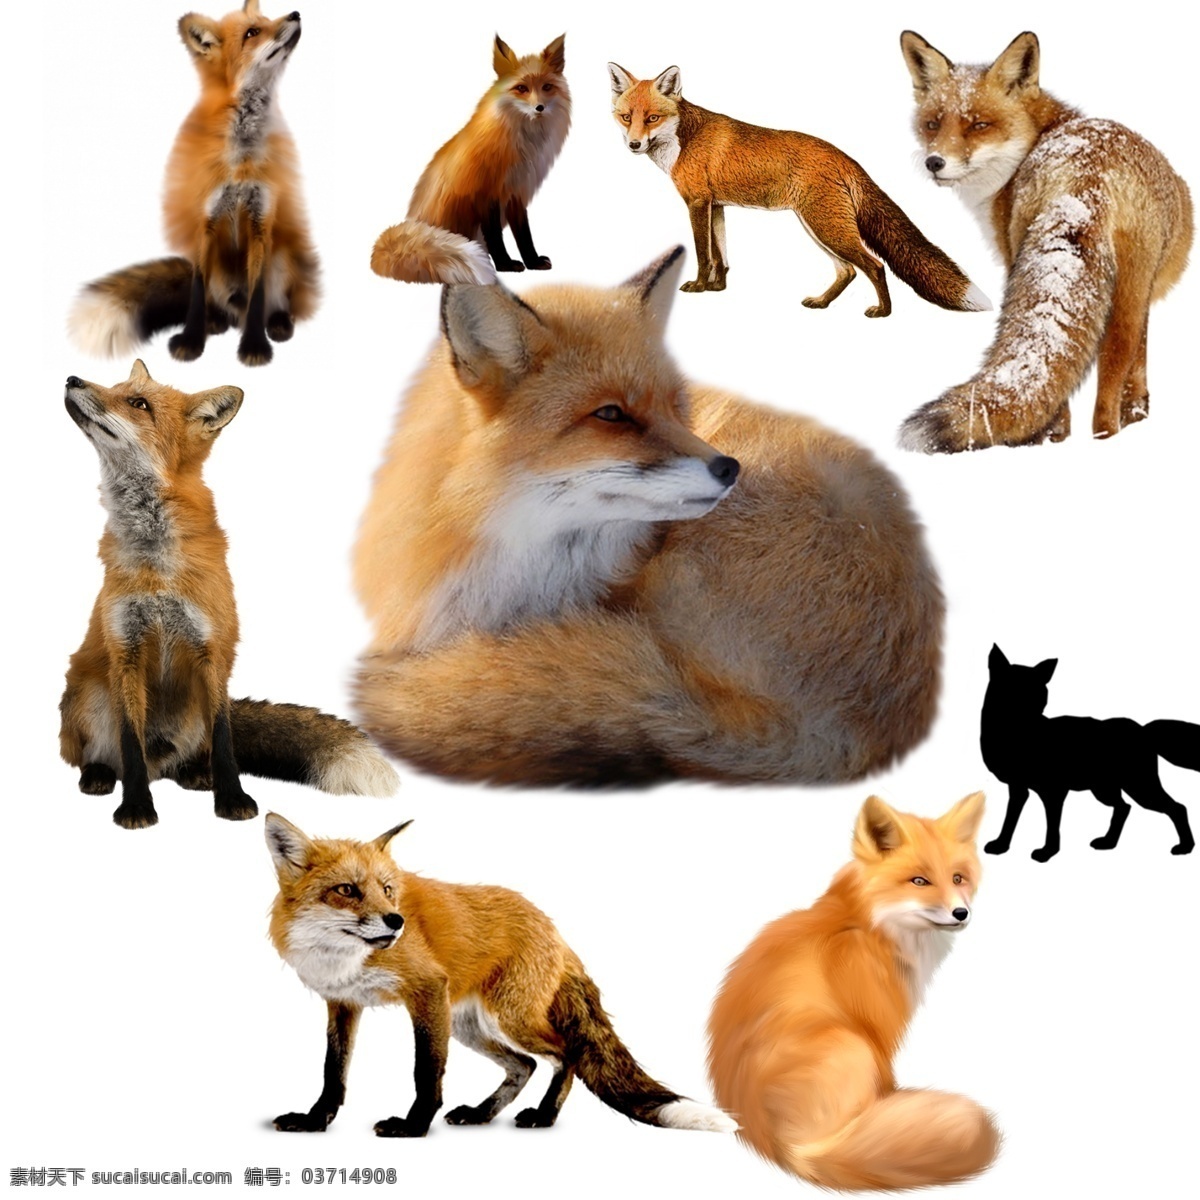 狐狸 免 扣 高清 素材图片 狐狸png 狐狸psd 狐狸免扣素材 狐狸素材 动物 生物世界 野生动物